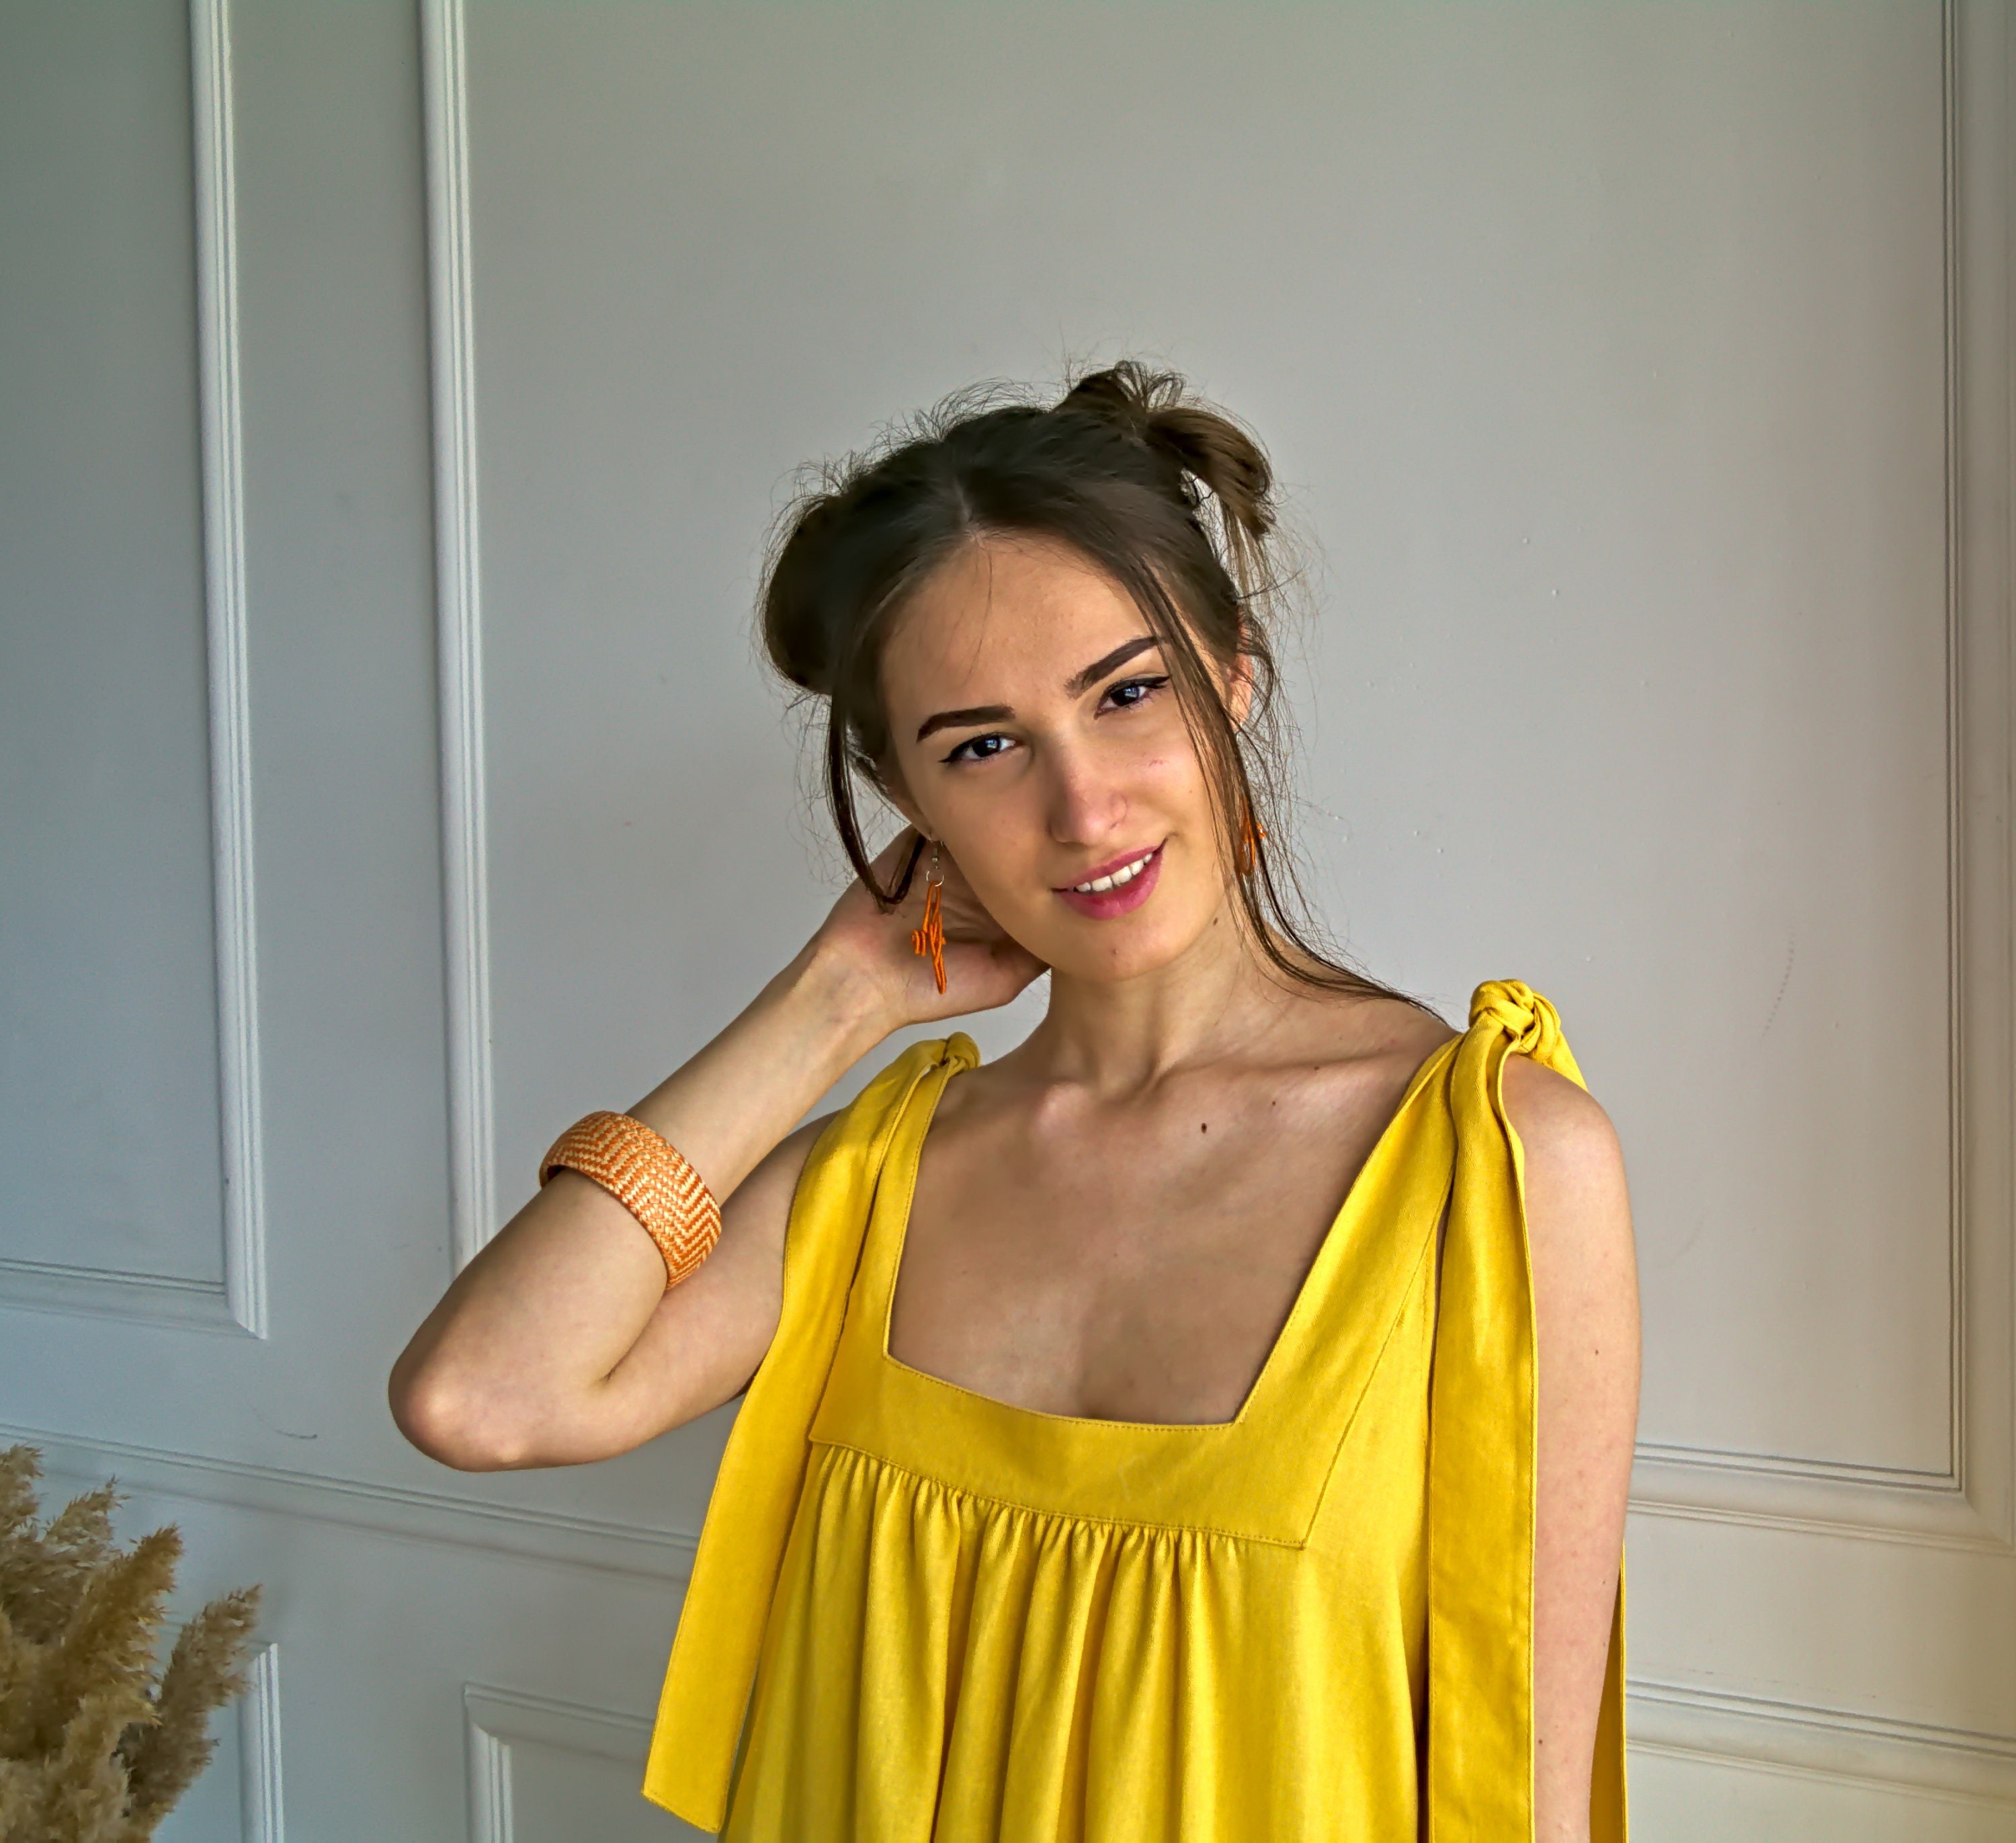 Yellow Maxi Linen Sundress, Backless Sundress, Wide Strap Slip Dress, Linen  Dresses for Women, Open Back Dress, Perfect Summer Dress -  Canada